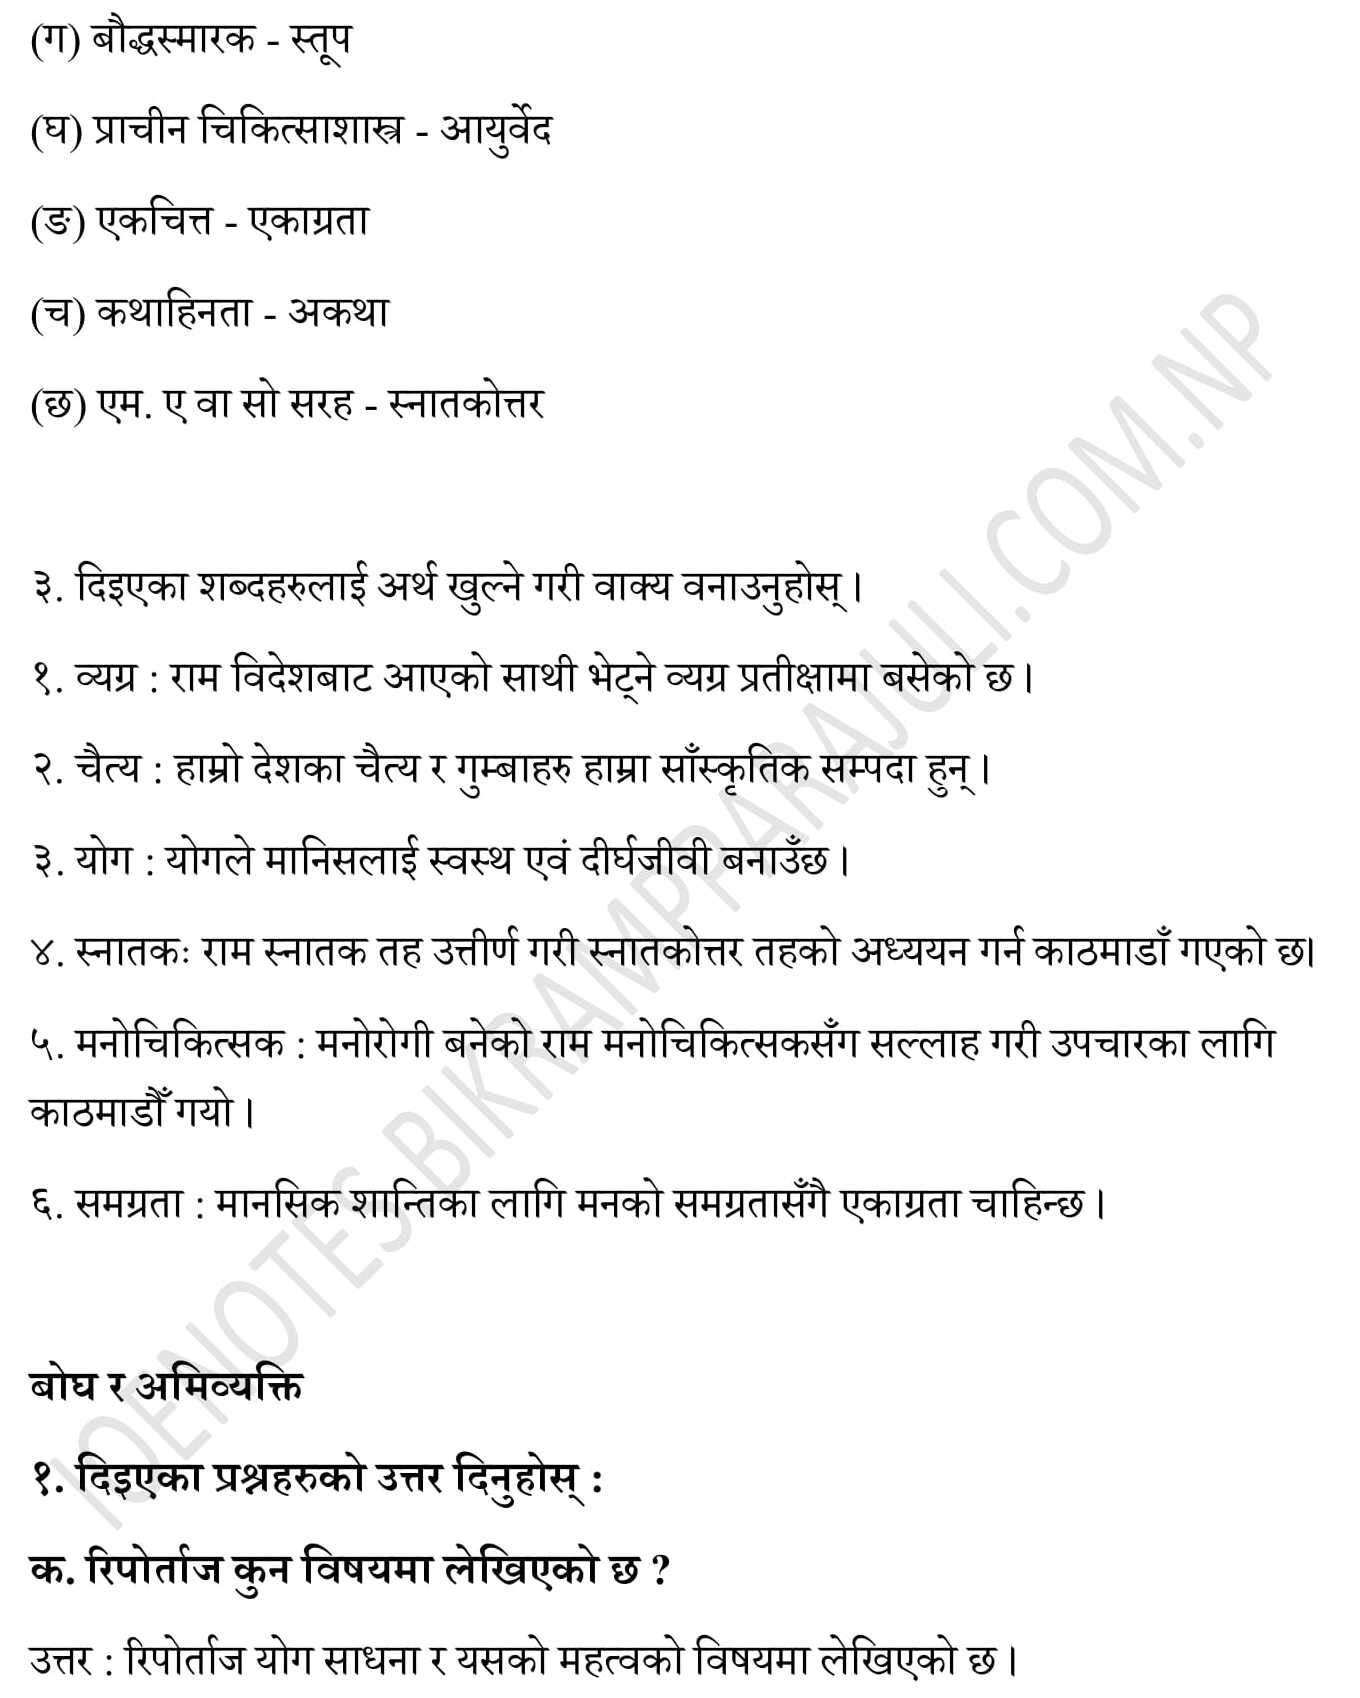 Safalta ko katha exercise: class 11 Nepali Unit 9